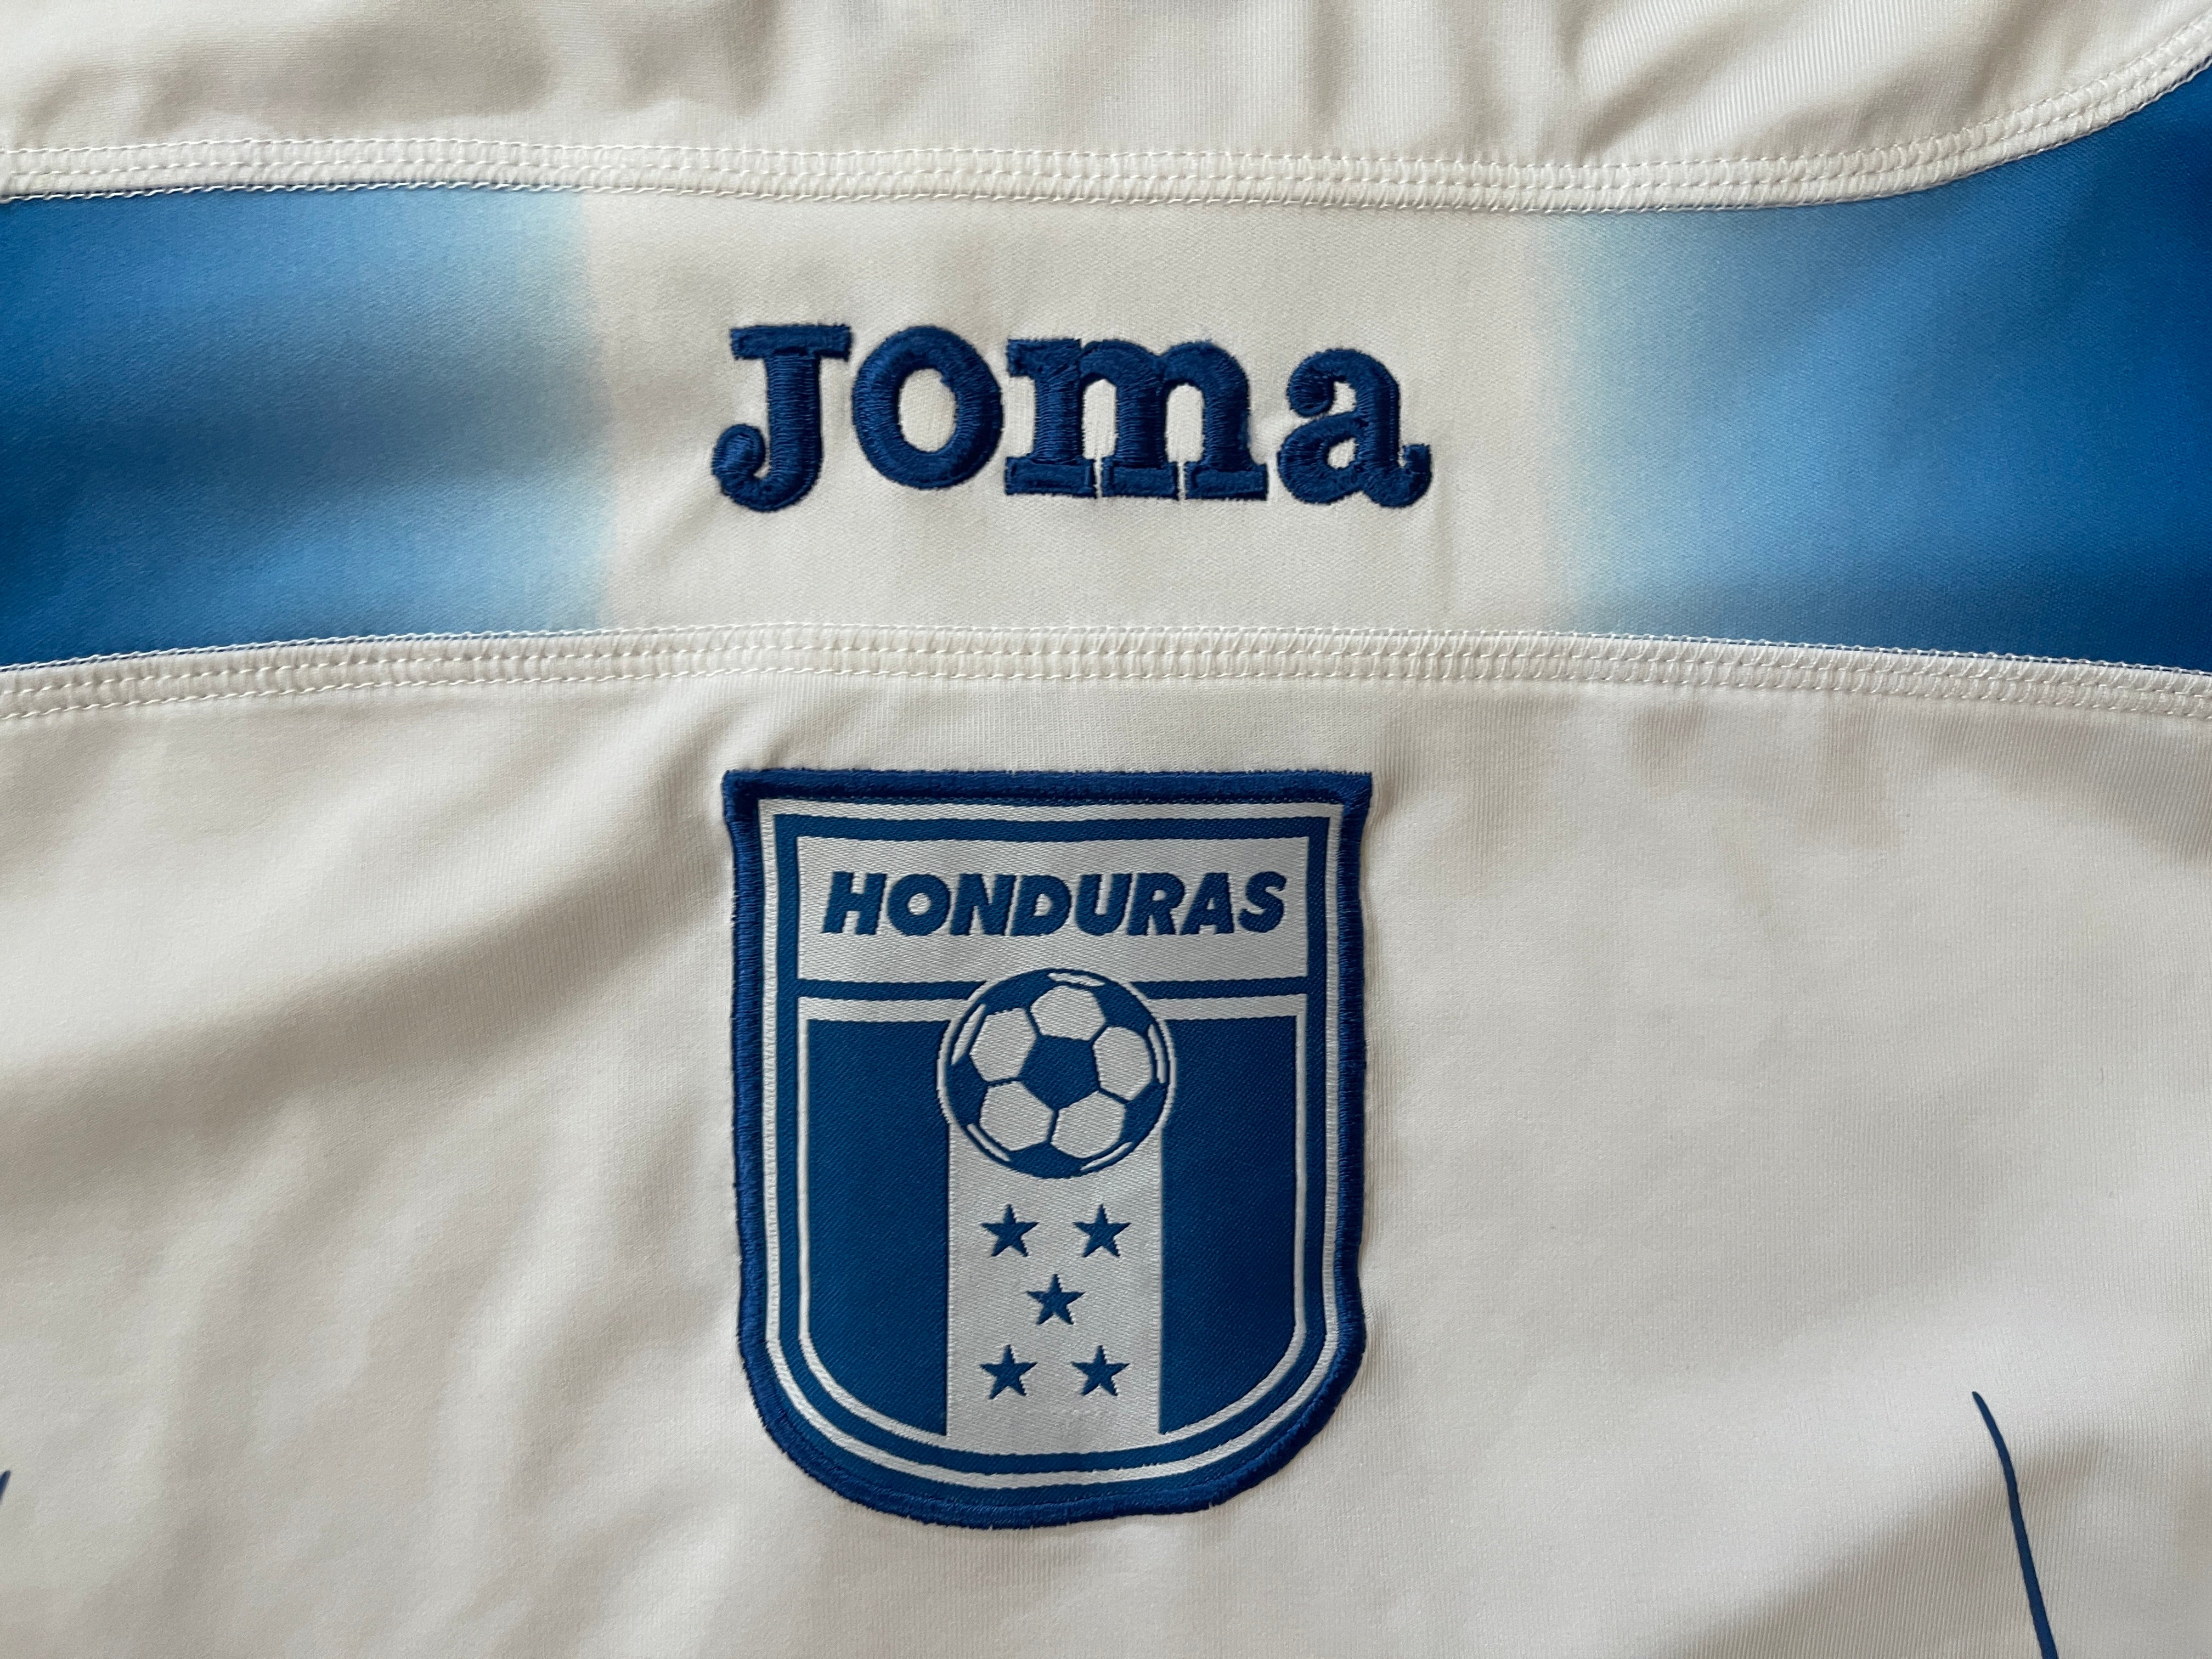 Honduras women's national team World Cup gear